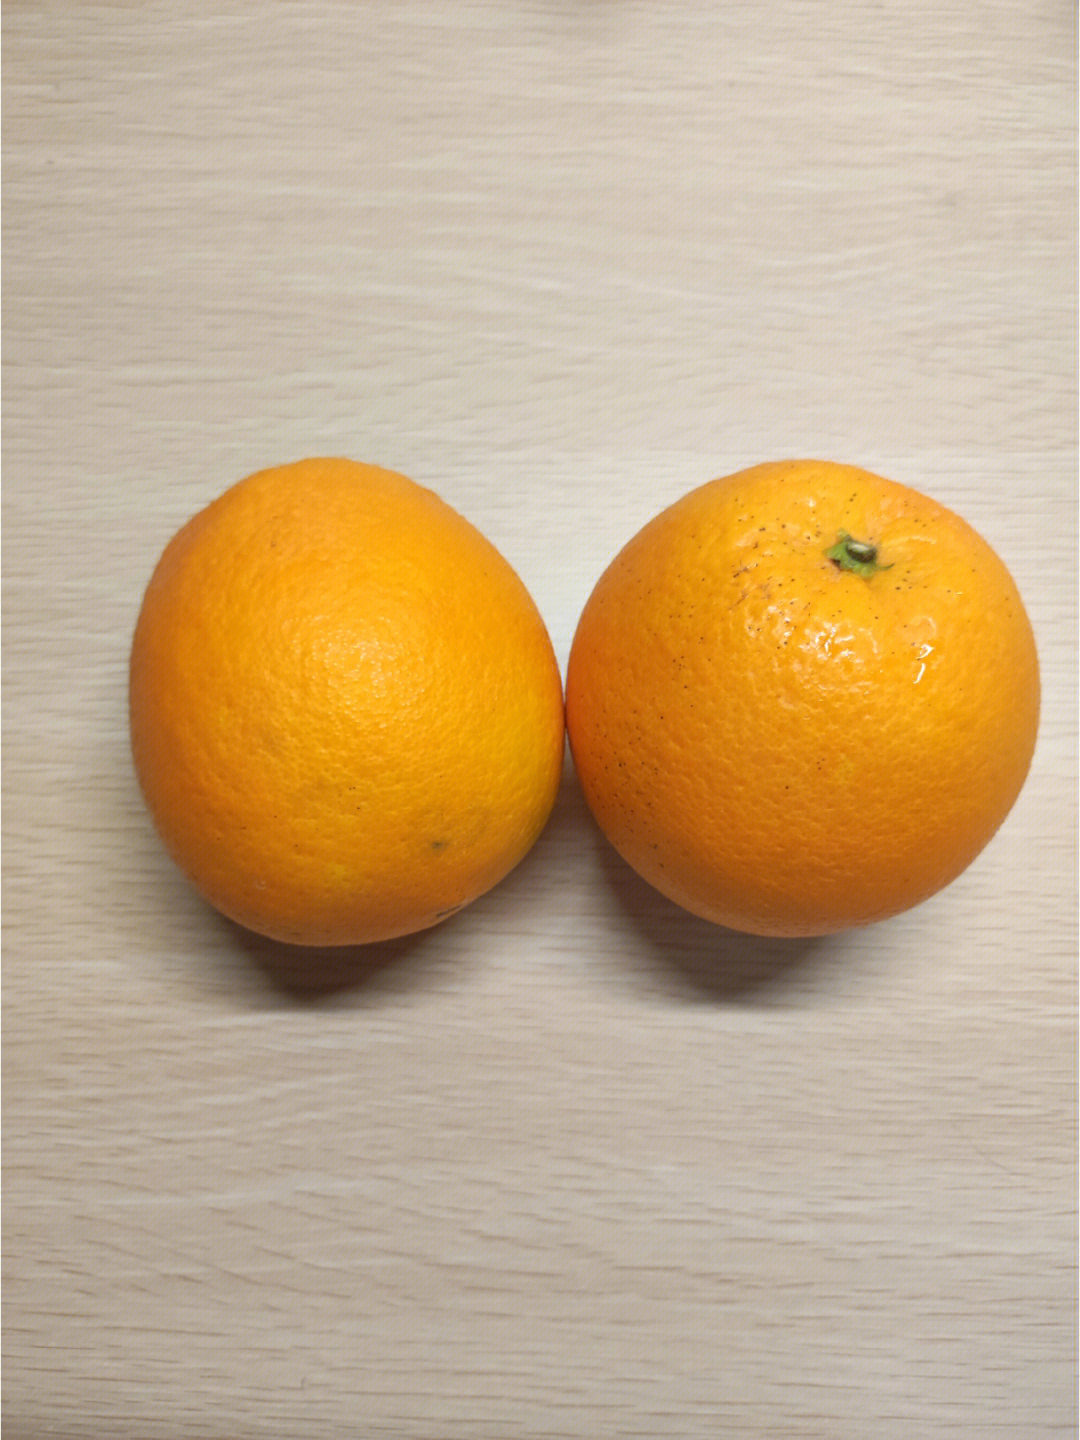 大橙子真名图片